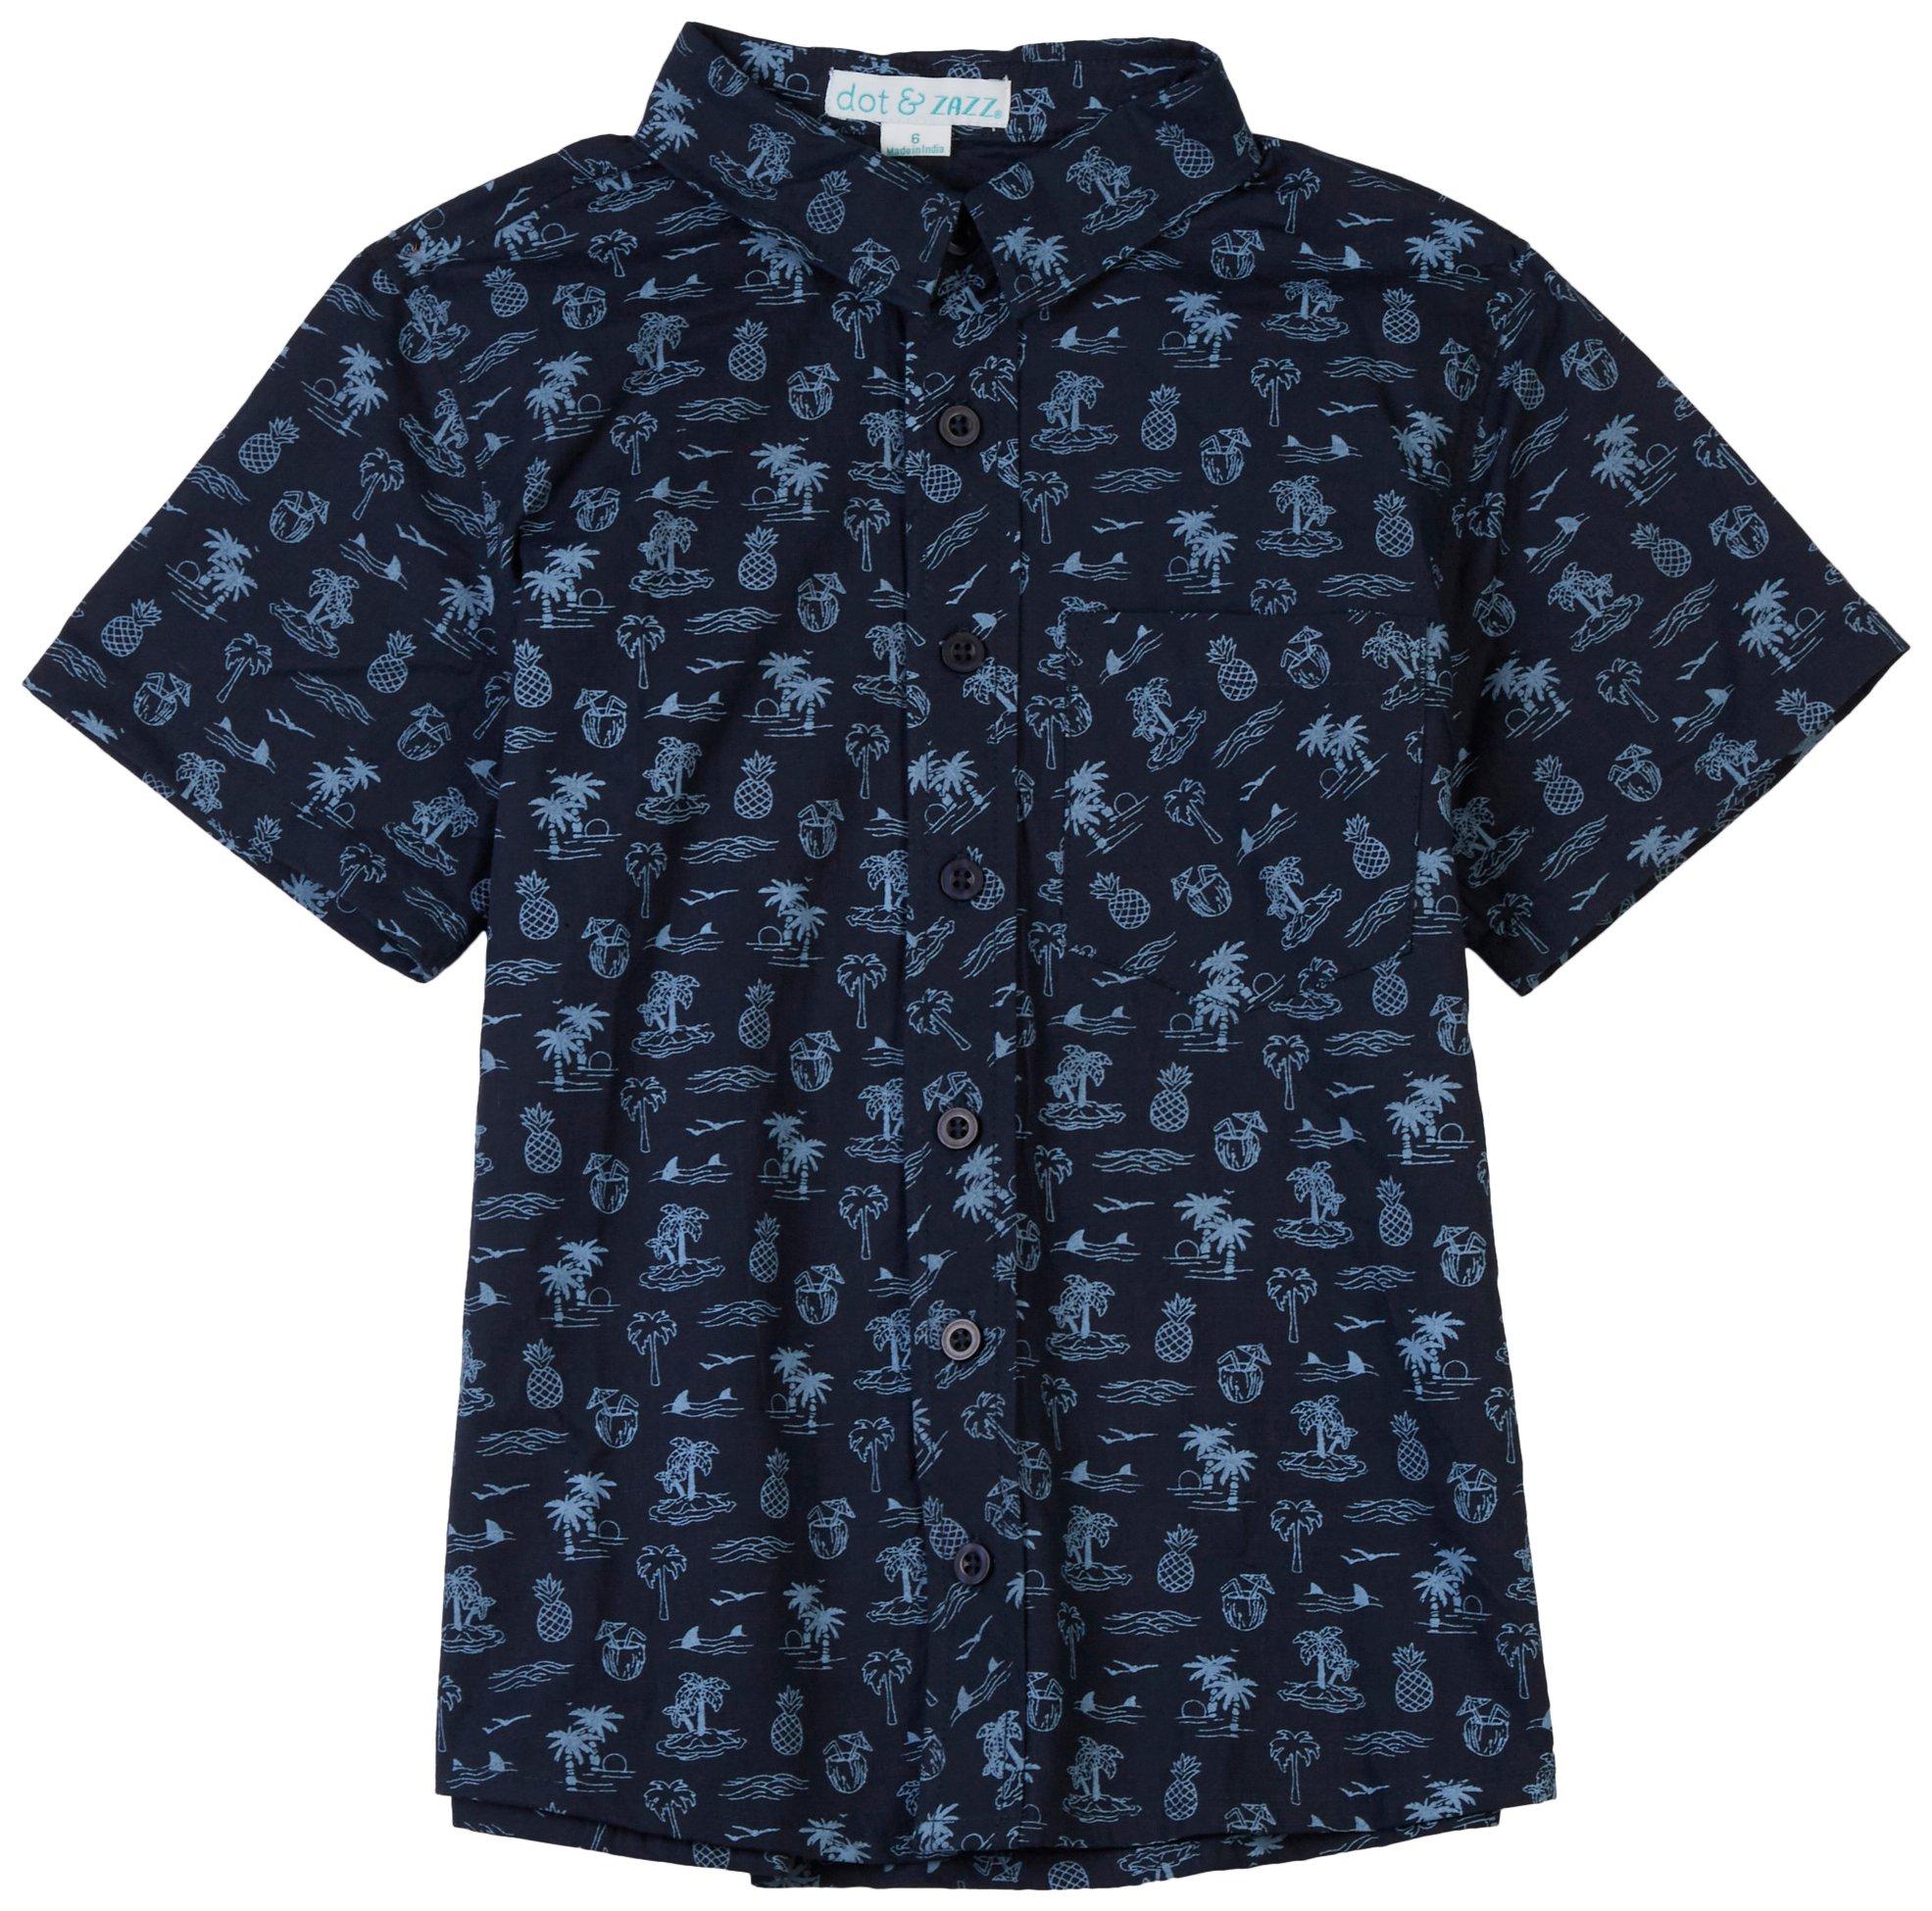 DOT & ZAZZ Little Boys Tropical Print  Shirt